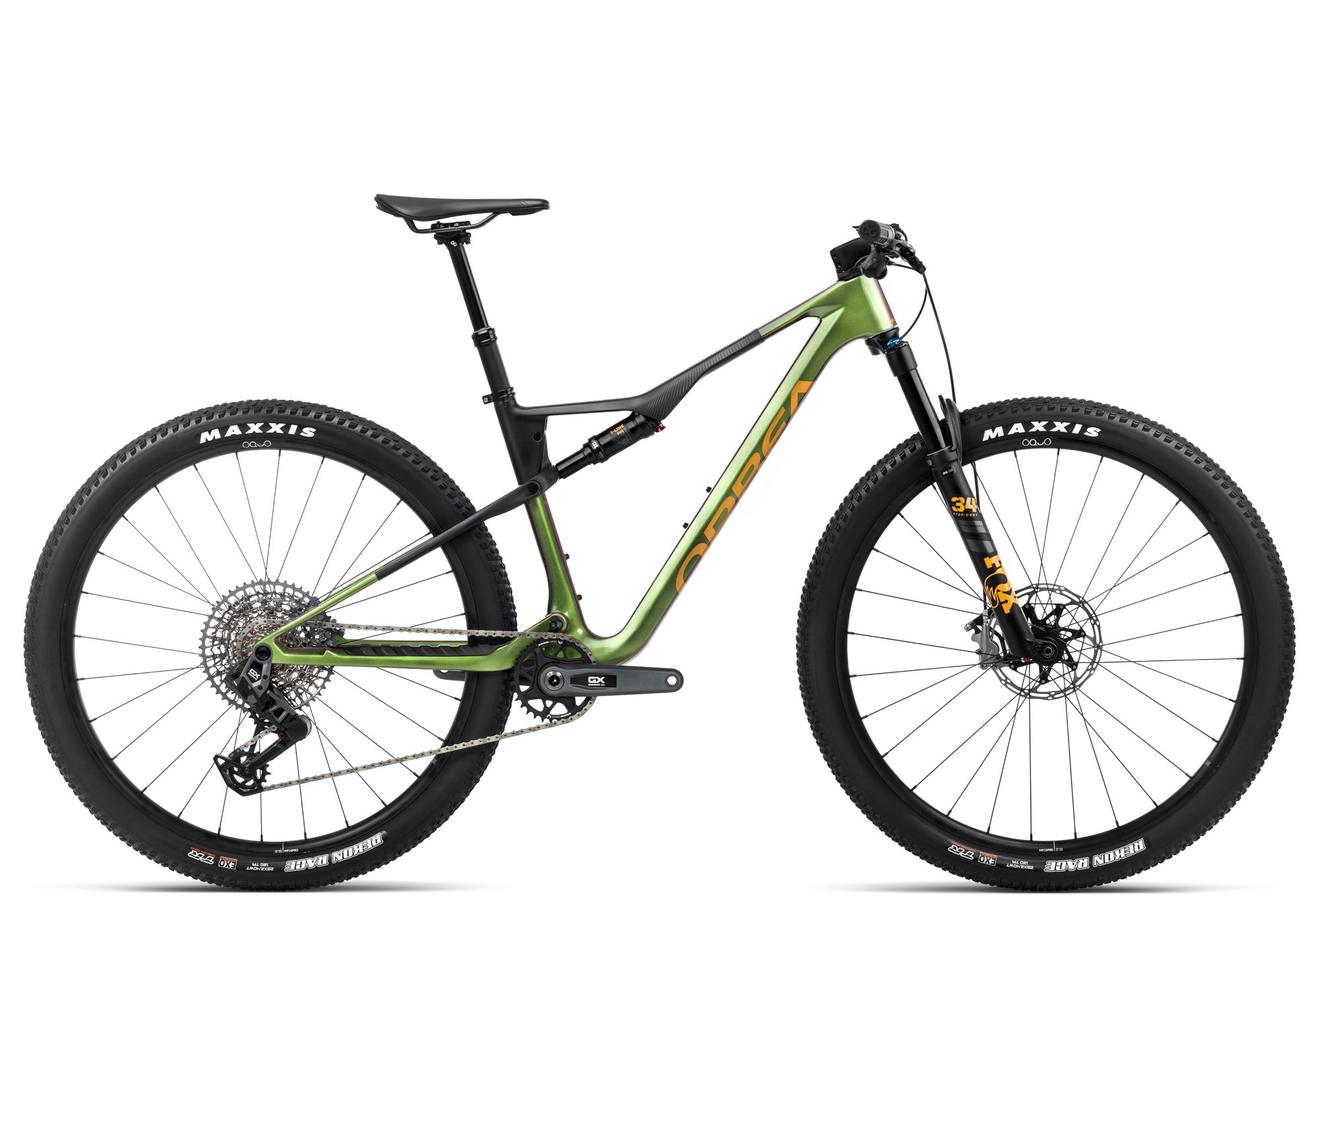 Orbea OIZ M11 AXS Chameleon Goblin Green -Black taille  M offre à 4399,2€ sur Culture Vélo